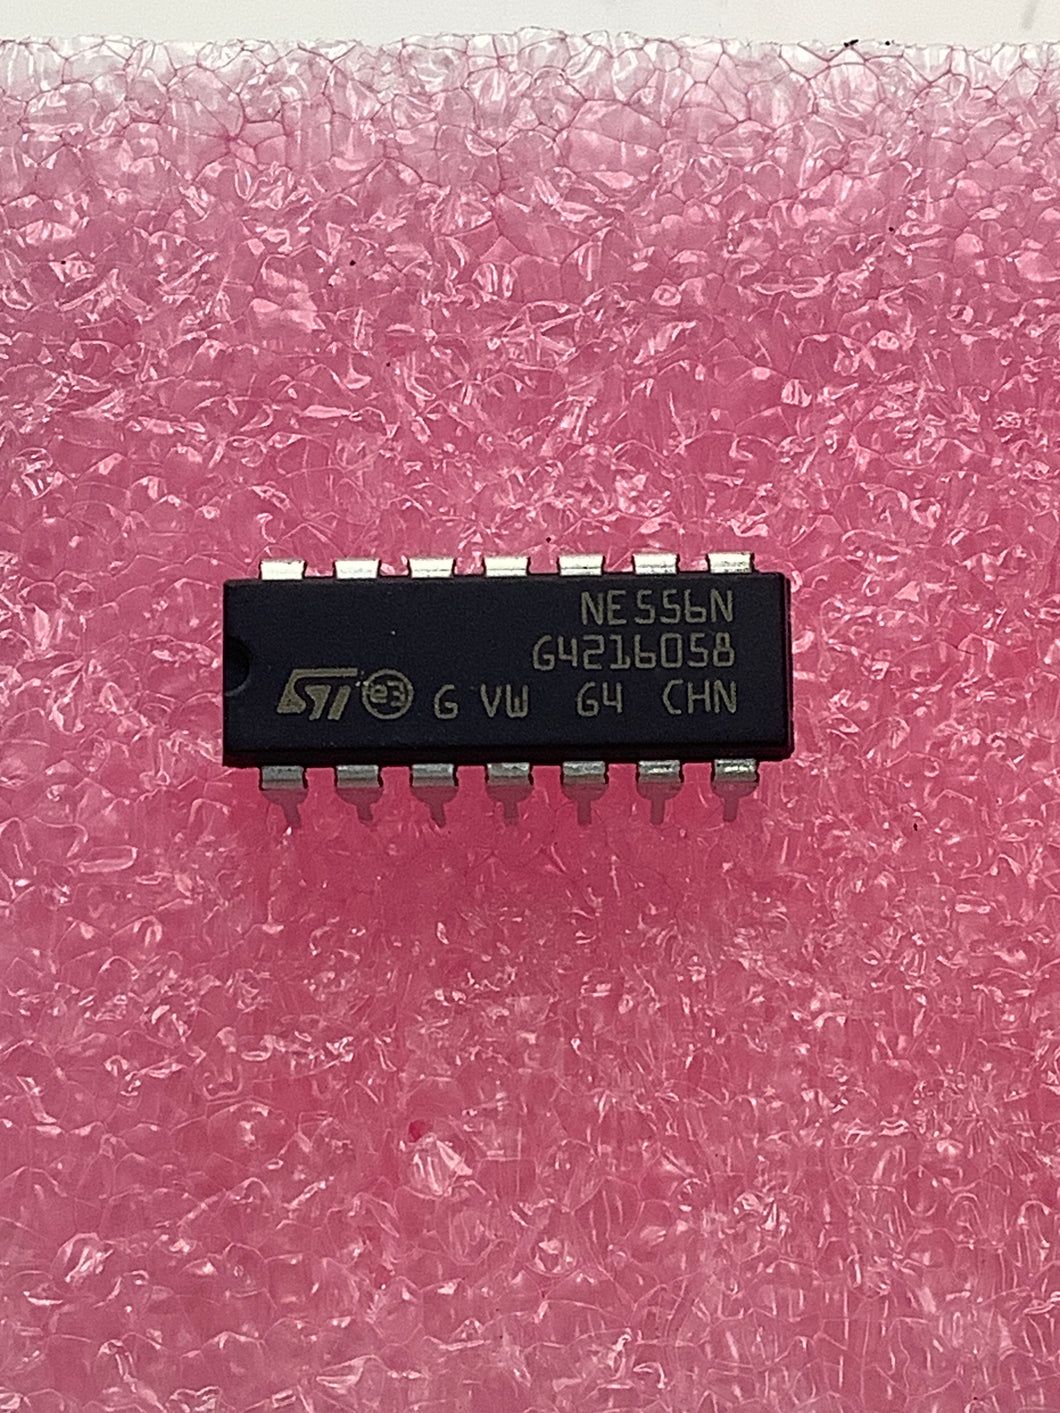 NE556N - ST - Dual timing circuit  (Dual 555)